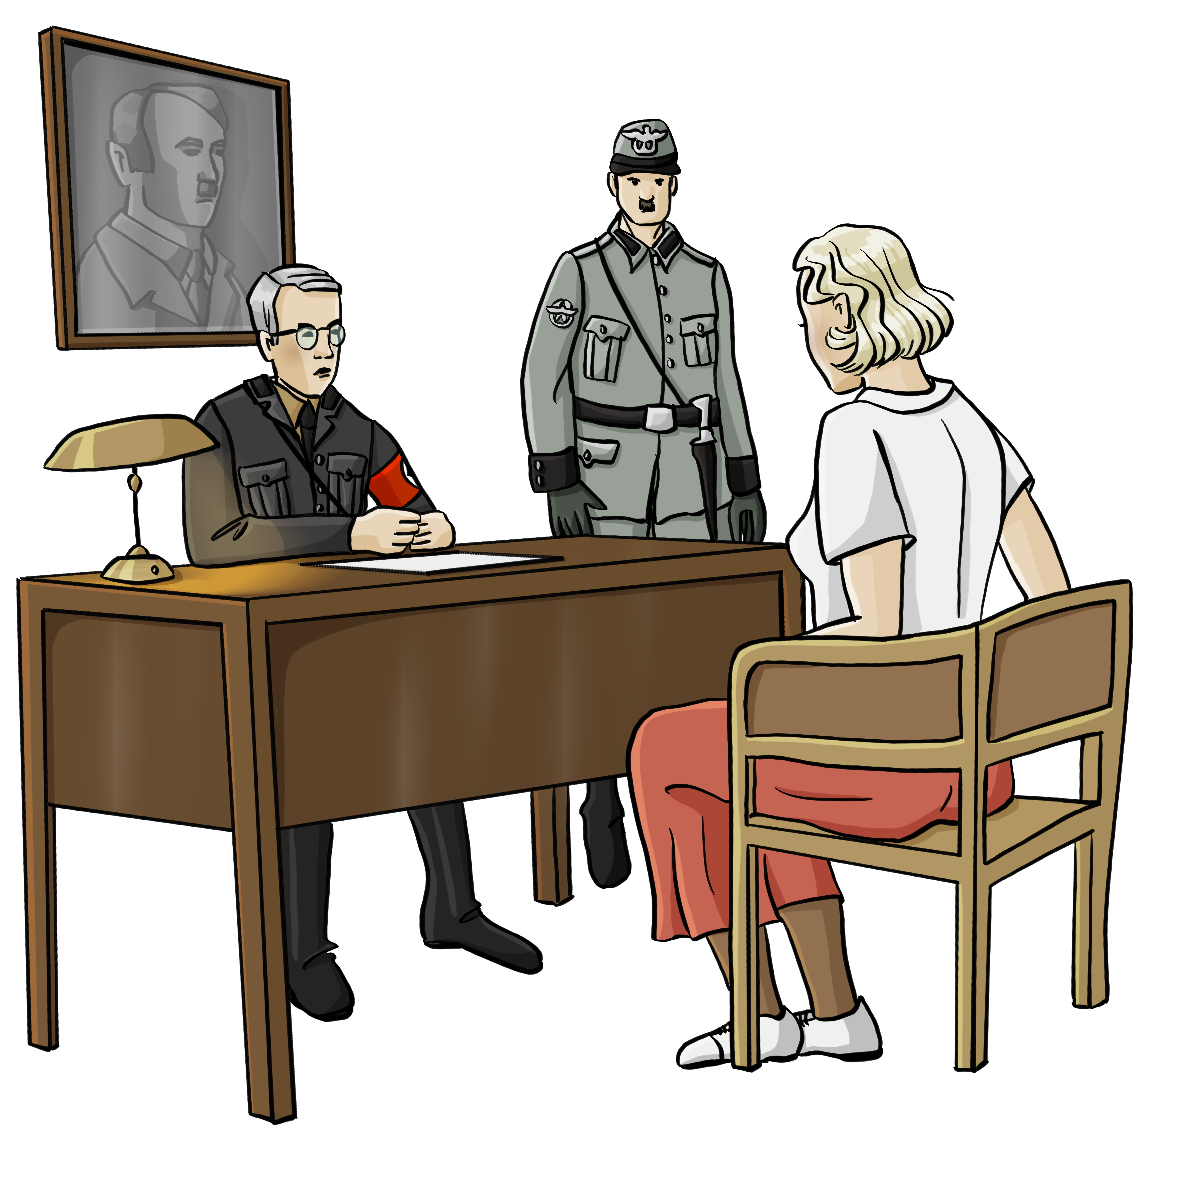 Ein Mann mit einer roten Binde am Arm sitzt hinter einem Schreibtisch. Neben ihm steht ein Mann in der Polizeiuniform der Nationalsozialisten. Vor dem Schreibtisch sitzt eine Frau auf einem Stuhl. Die Männer schauen streng, die Frau hält den Kopf gesenkt.